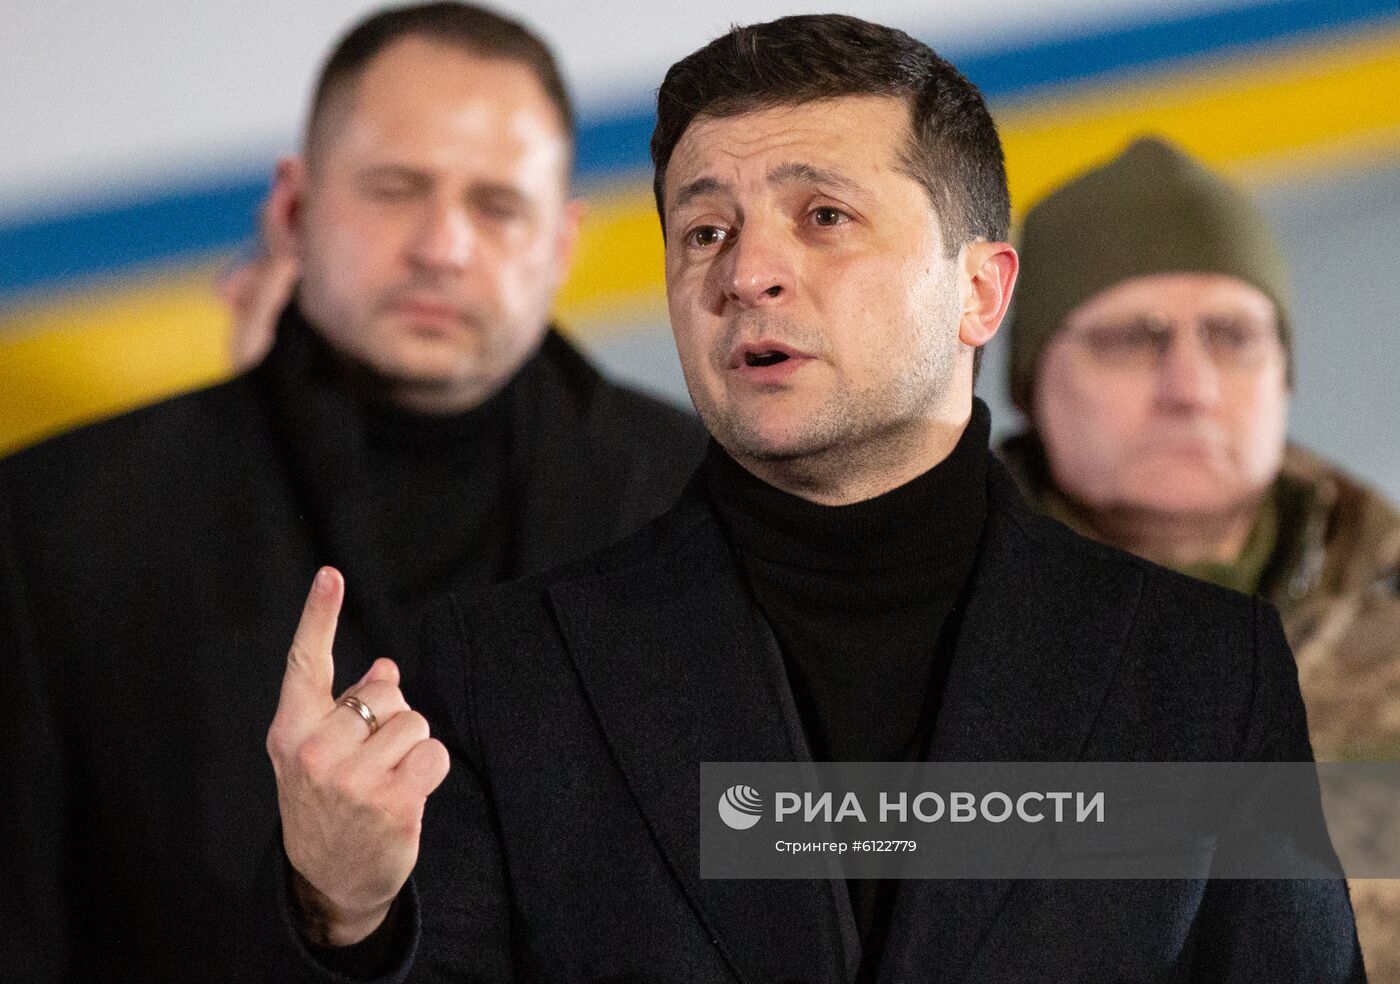 Обмен военнопленными между ДНР, ЛНР и Украиной в Донецкой области 